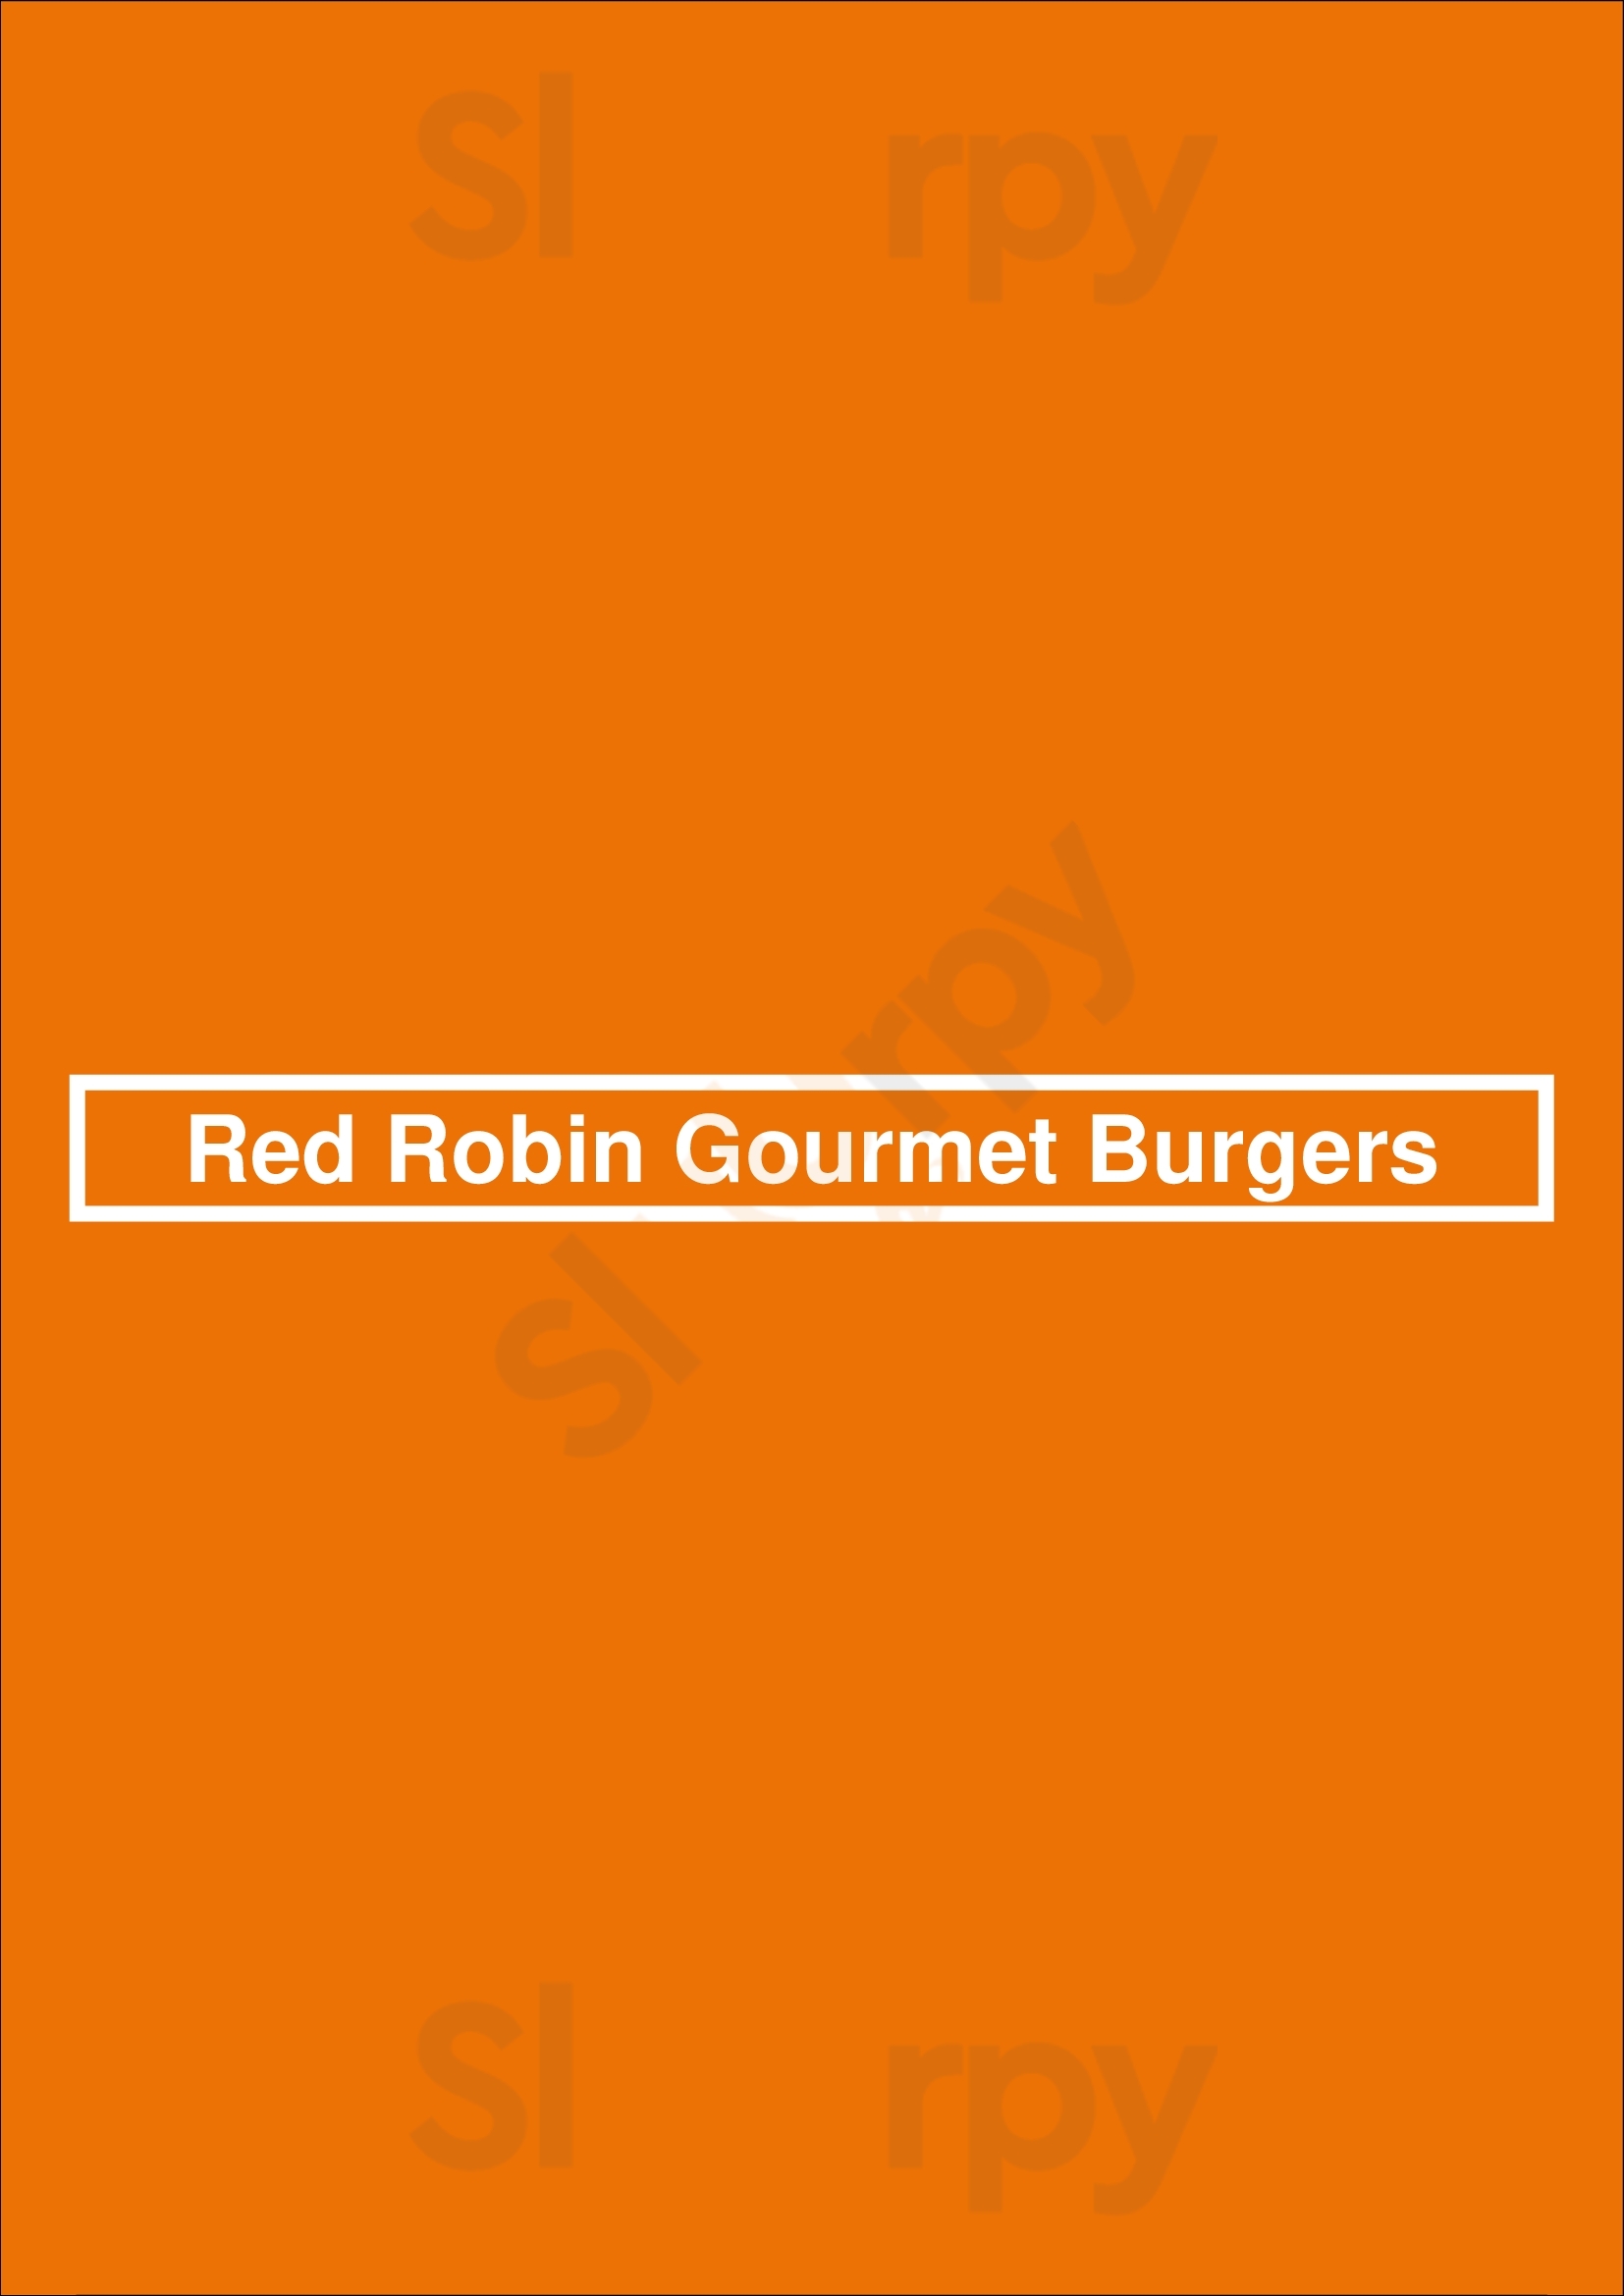 Red Robin Gourmet Burgers Baton Rouge Menu - 1